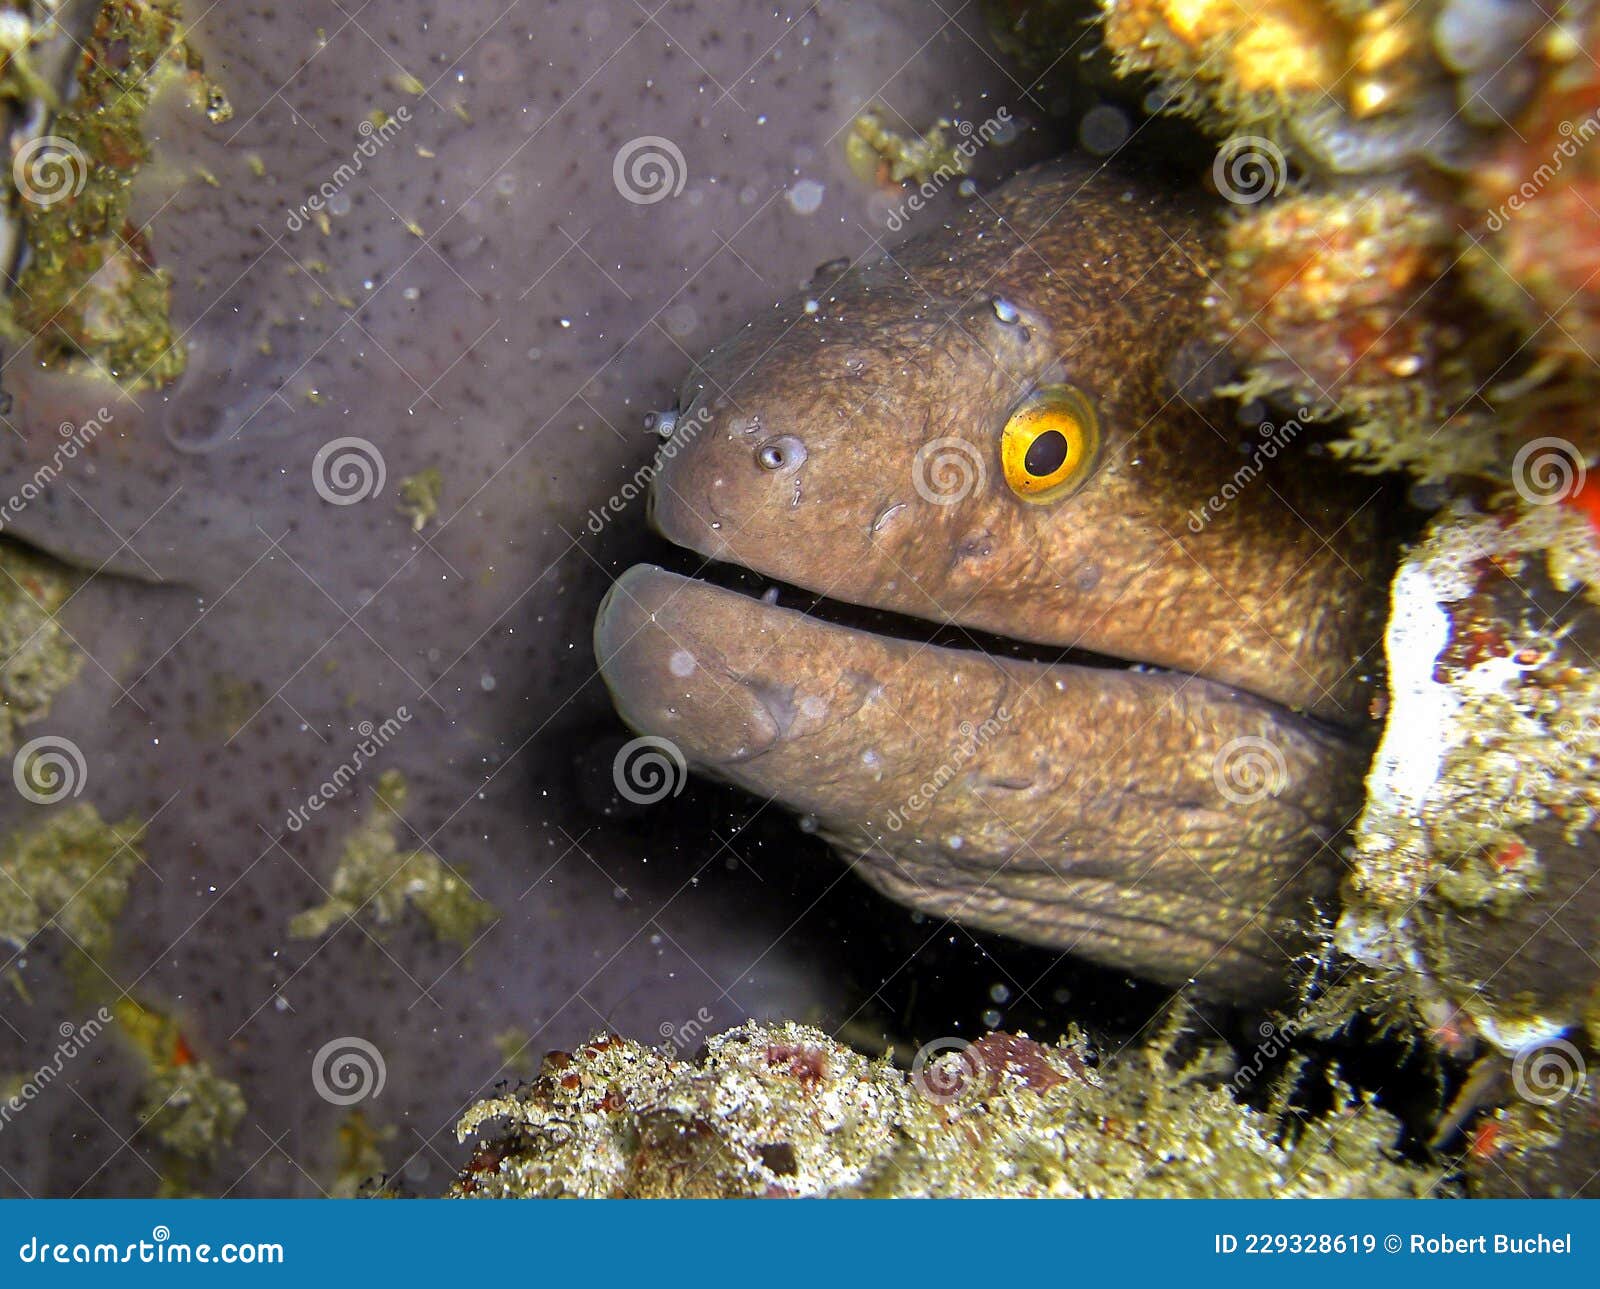 爪哇裸胸鳝 库存照片. 图片 包括有 关闭, 敌意, 珊瑚, 海运, 摄影, 海岛, 一个, 食肉动物 - 240542742